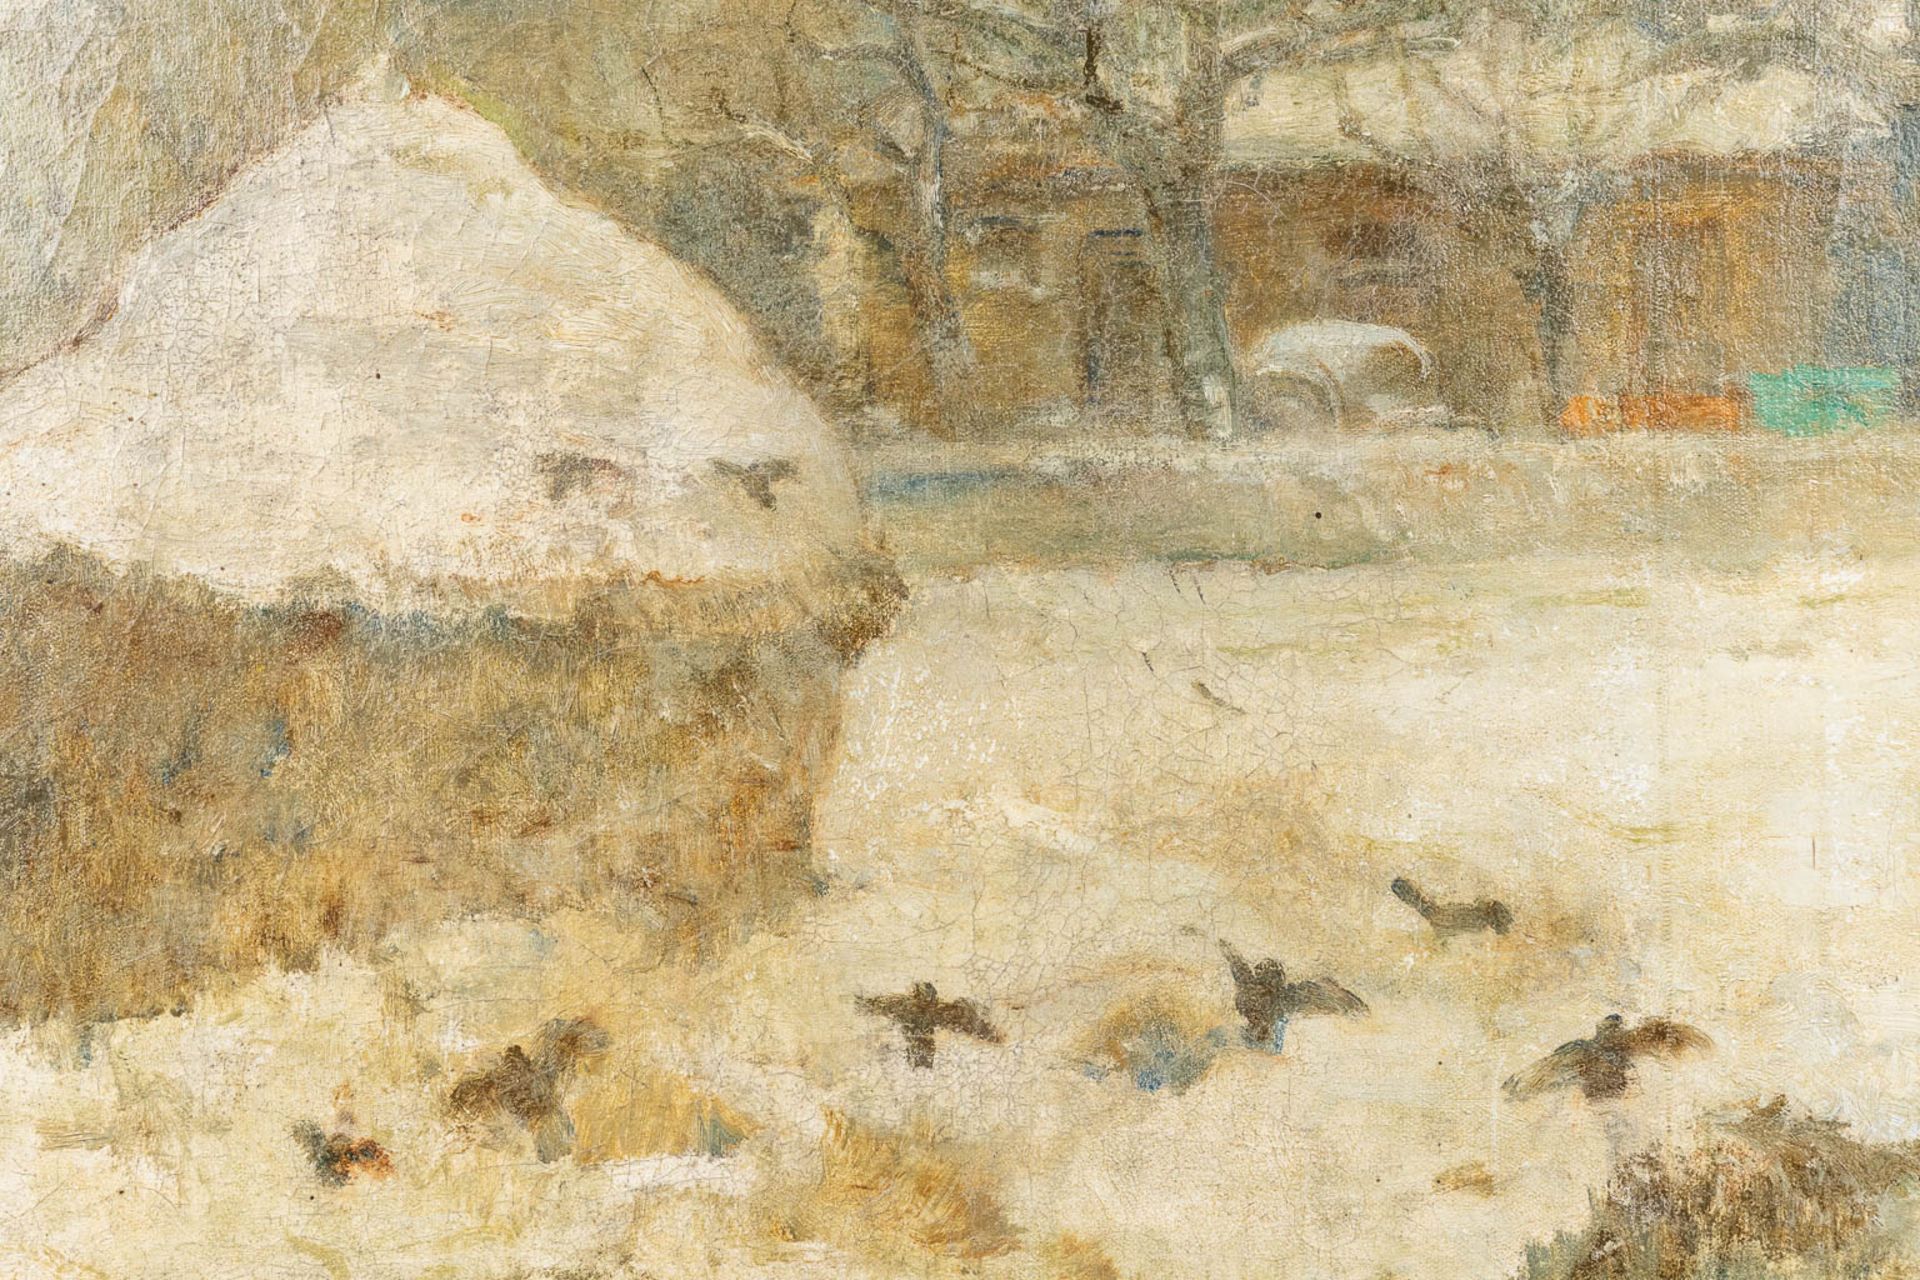 Alfons DE CUYPER (1887-1950) 'Snow Landscape' a painting, oil on canvas. (100 x 70cm) - Image 6 of 7